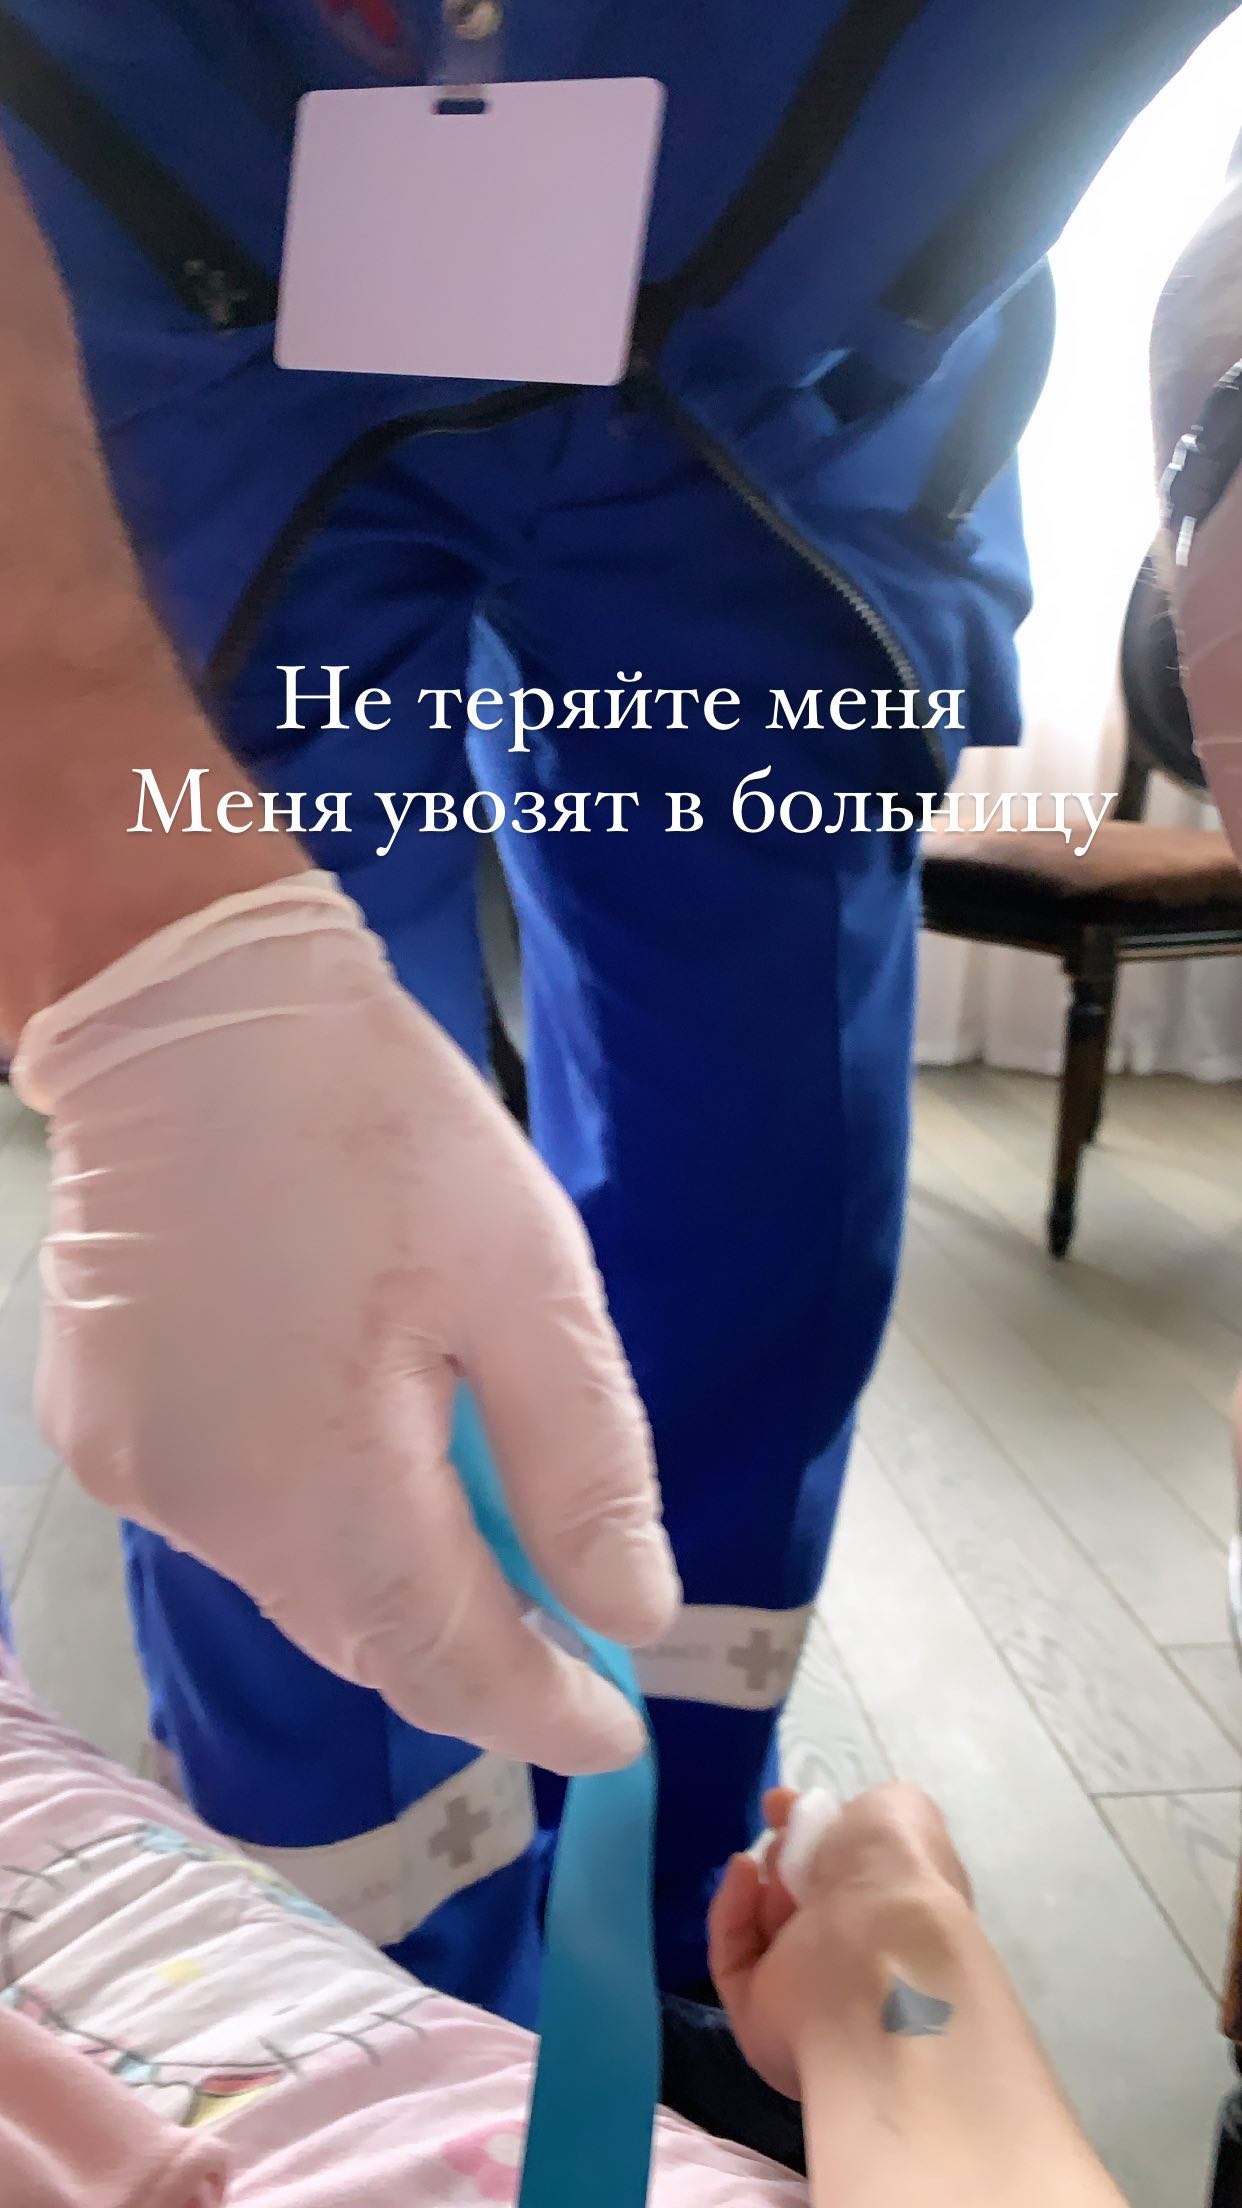 Алёну Водонаеву экстренно увезли в больницу